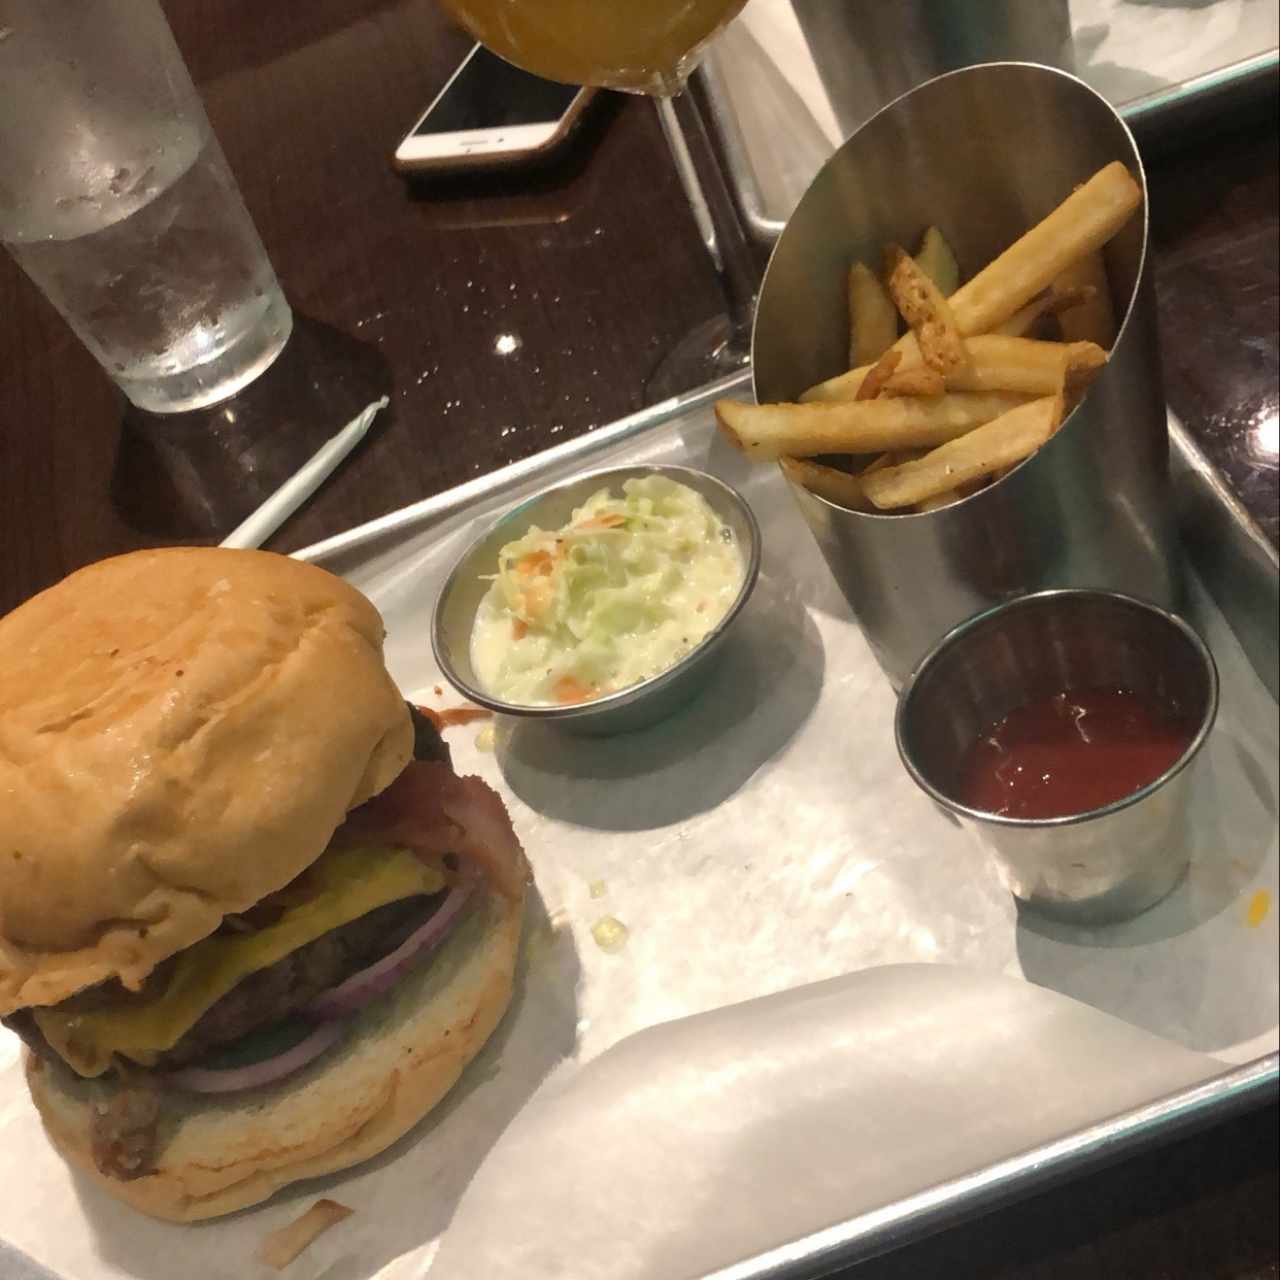 memphi’s burger